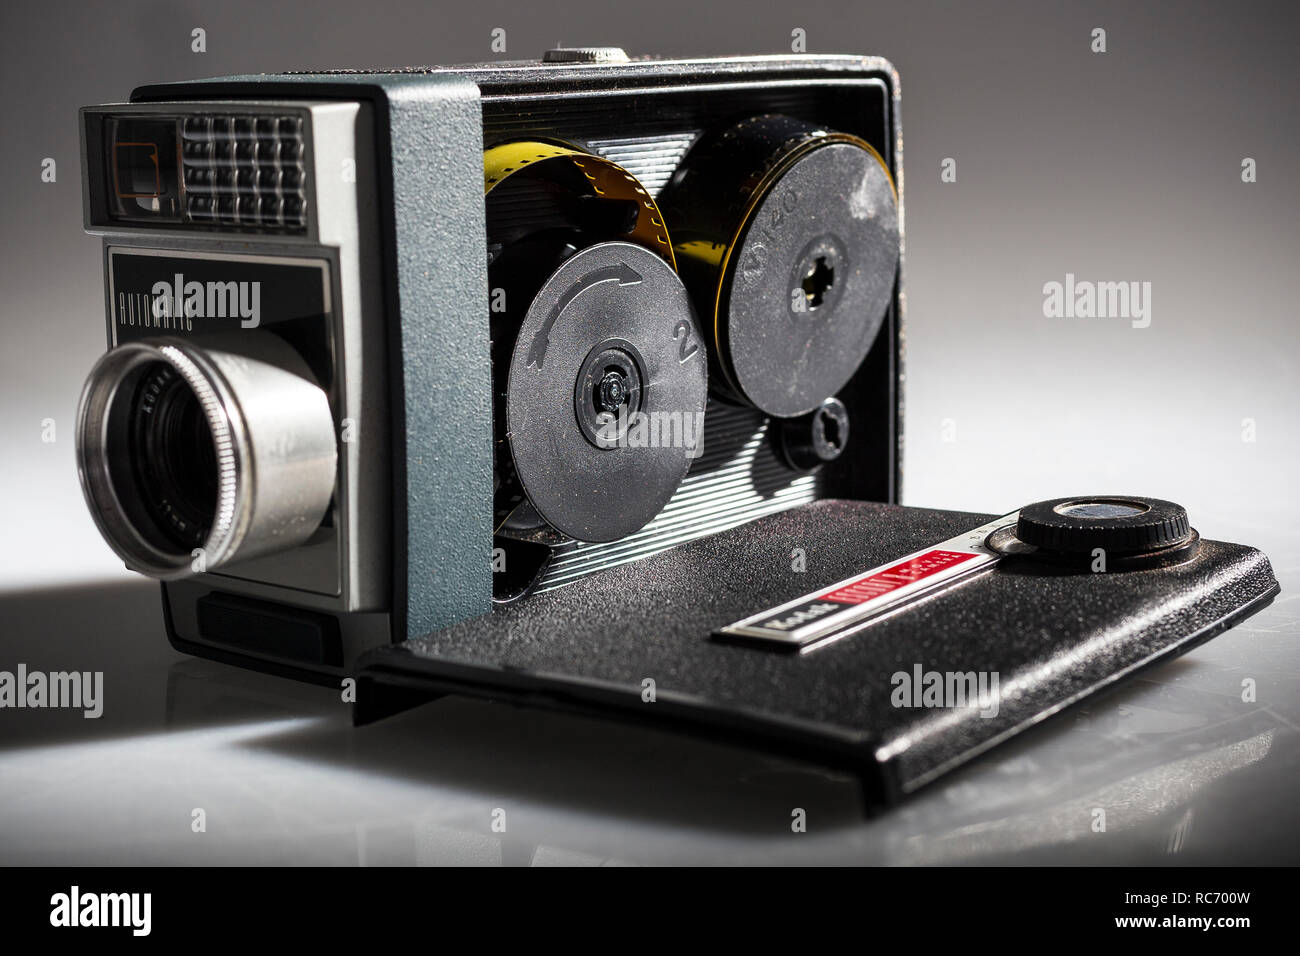 Un Super 8mm caméra est une caméra fabriqués spécialement pour utiliser le Super 8mm format d'image. Super 8mm caméras film Banque D'Images